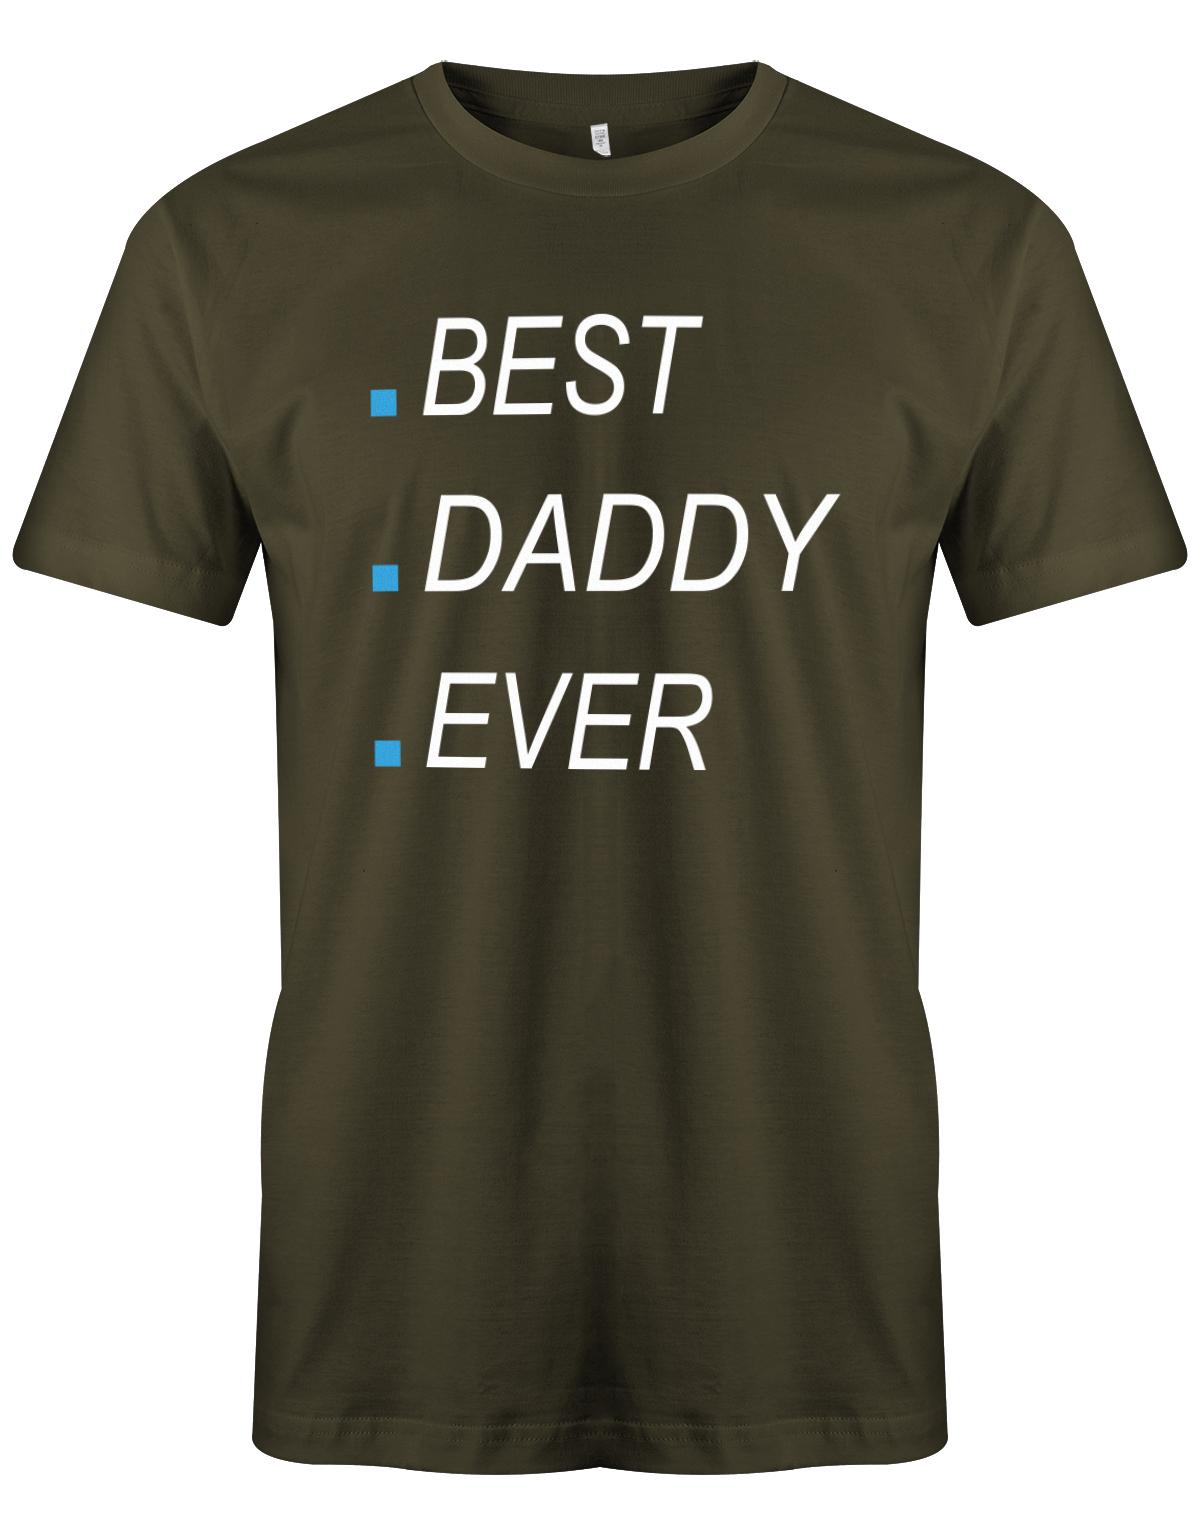 Best-Daddy-ever-Herren-papa-Shirt-Army